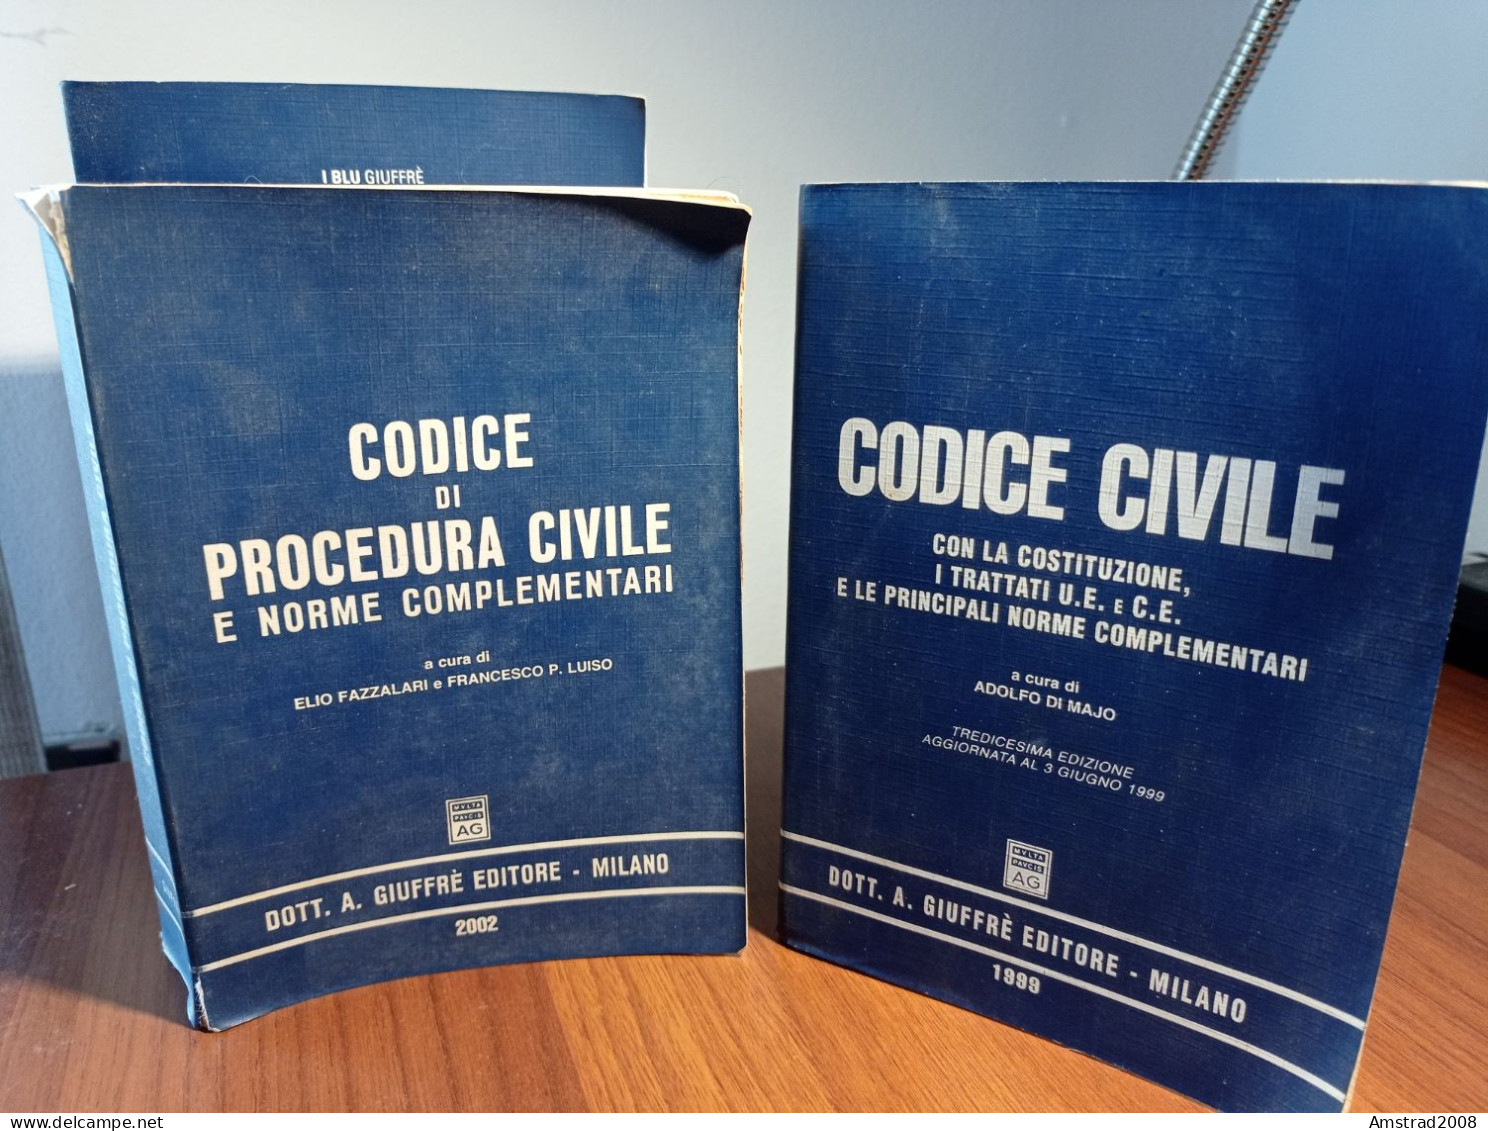 CODICE CIVILE + CODICE DI PROCEDURA CIVILE + CODICE CIVILE CON LA COSTITUZIONE - 3 LIBRI DI DIRITTO CIVILE